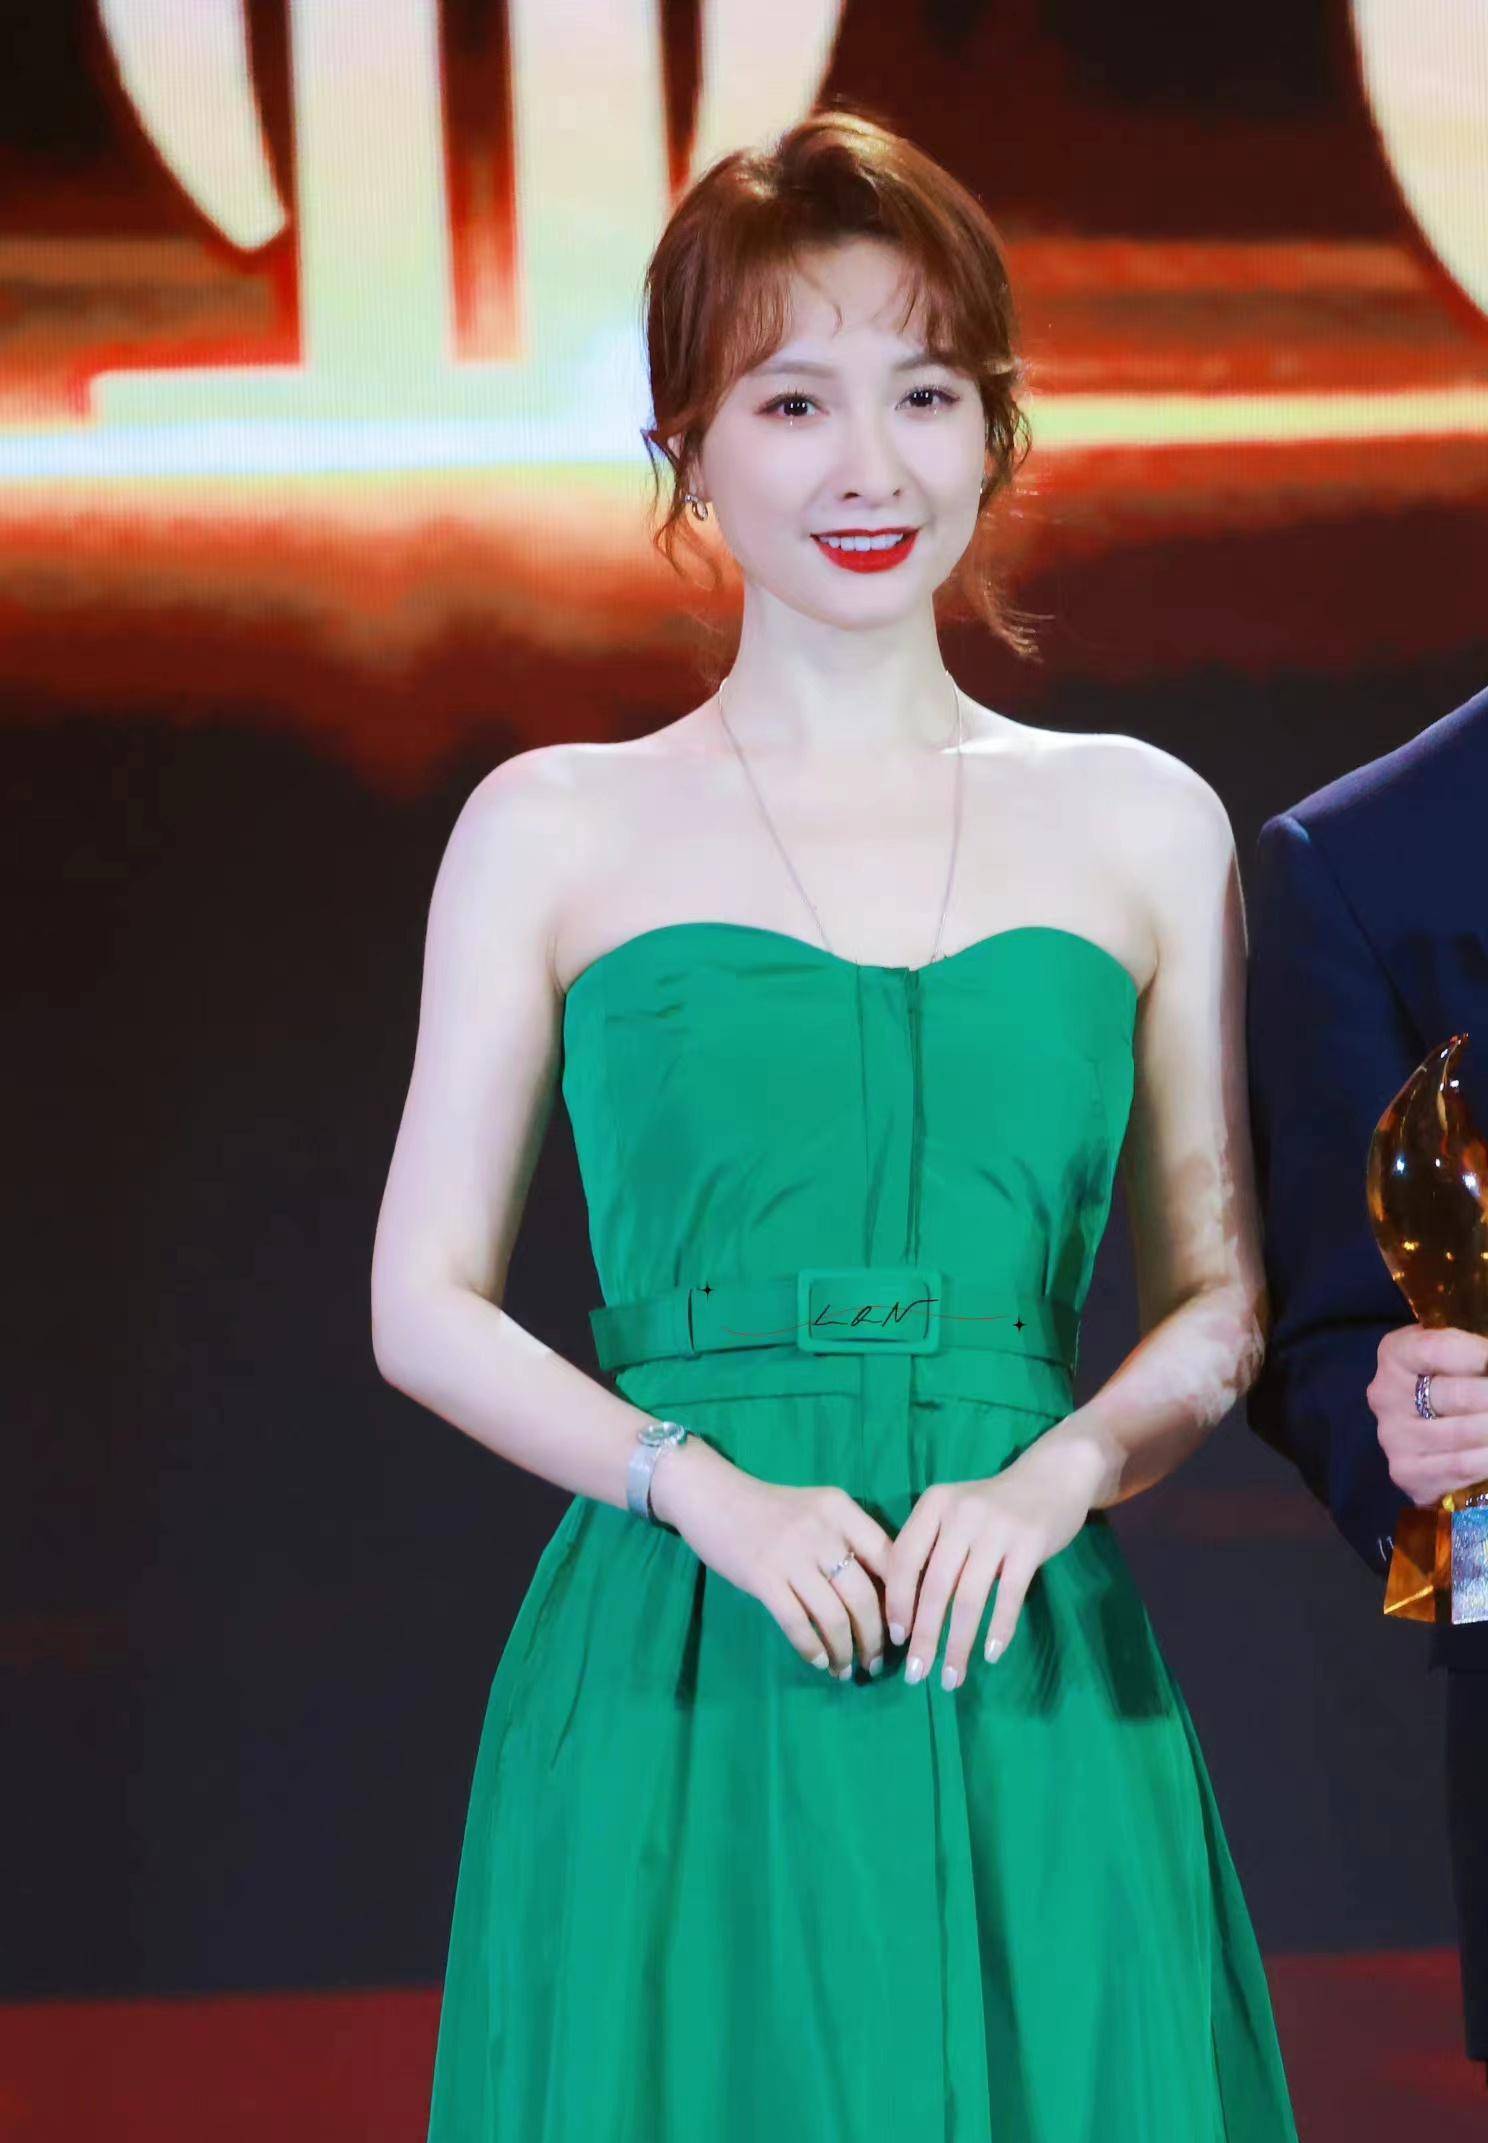 吴昕出席活动,一袭绿色抹胸长裙清新又优雅,40岁了美得更出众